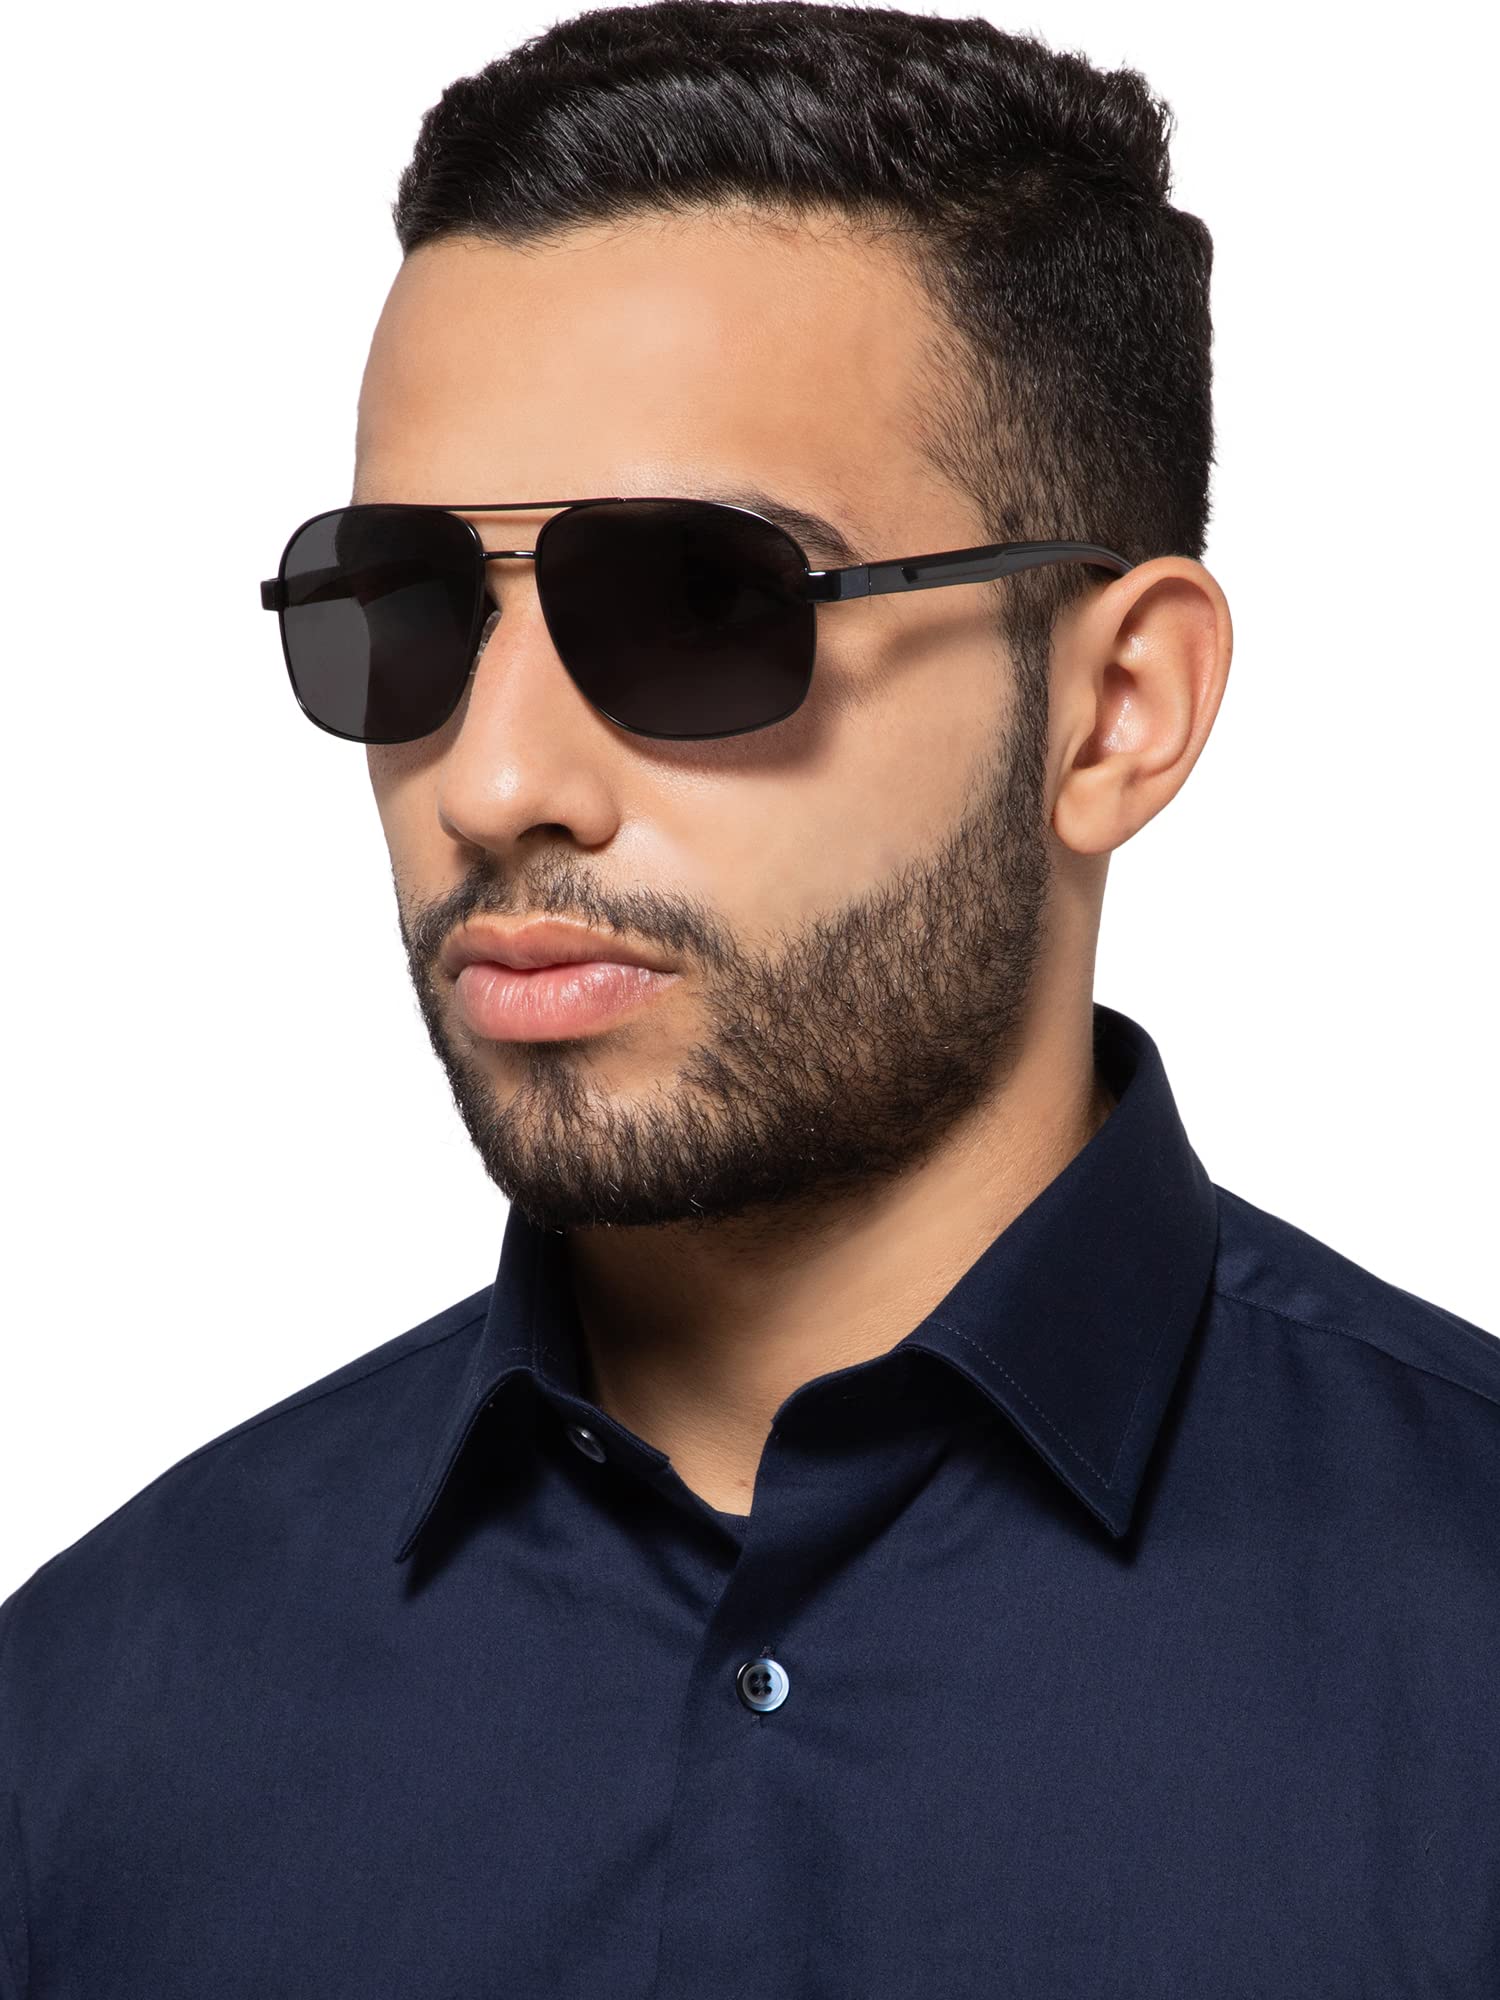 Intellilens Aviator UV Protection Sunglasses For Men Women, 40% OFF